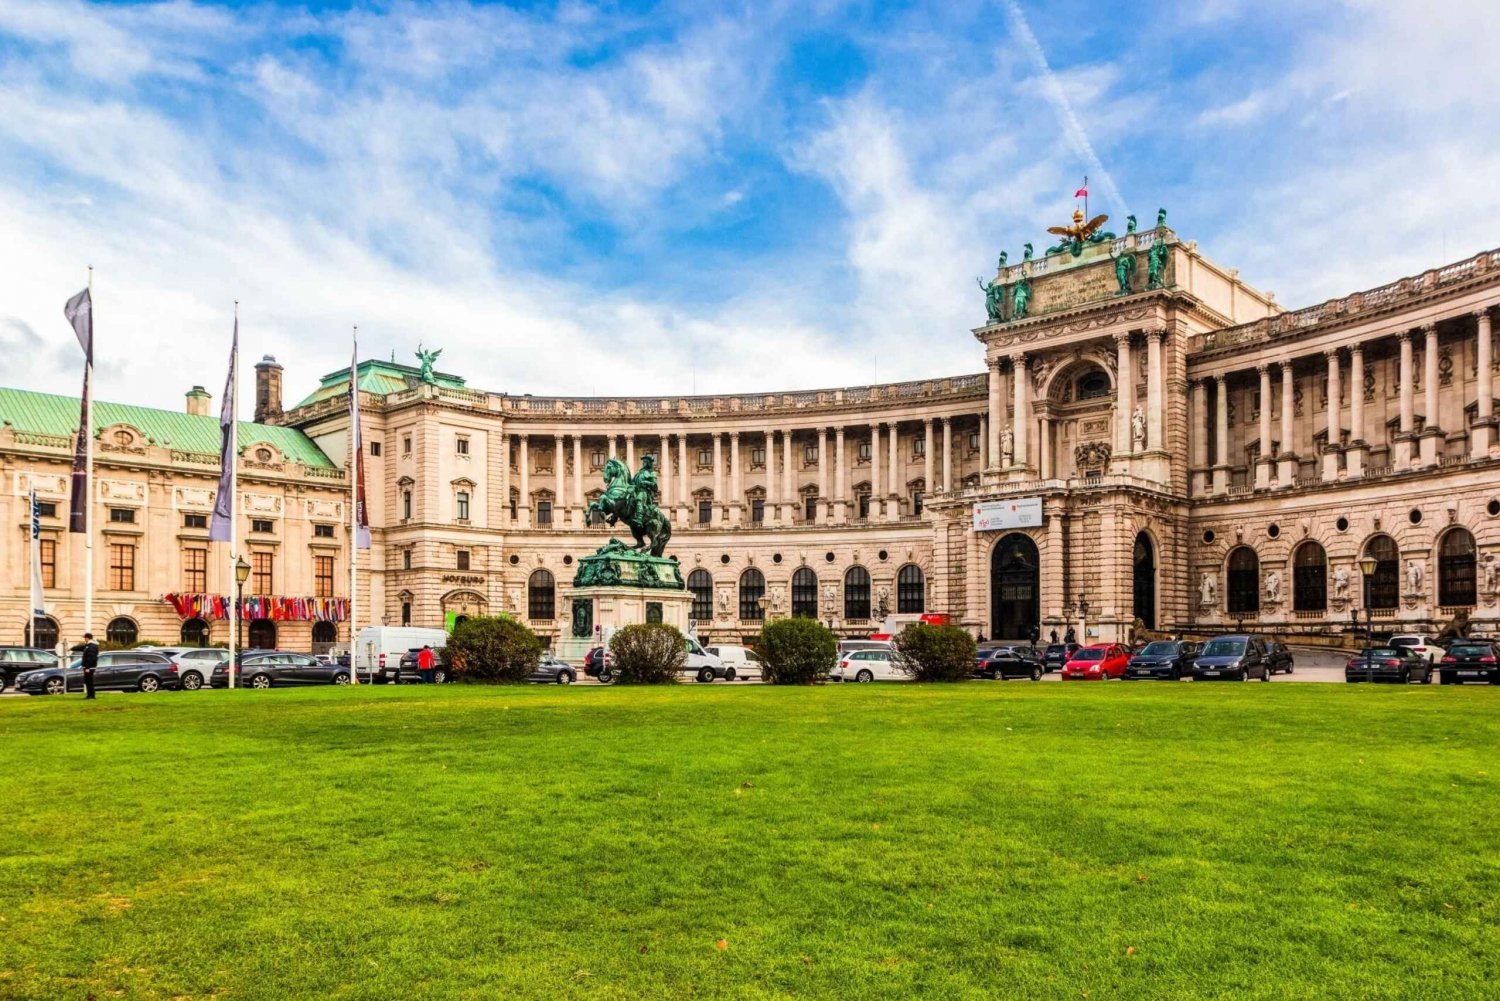 Wiedeń: Muzeum Sisi i wstęp bez kolejki do pałacu Hofburg